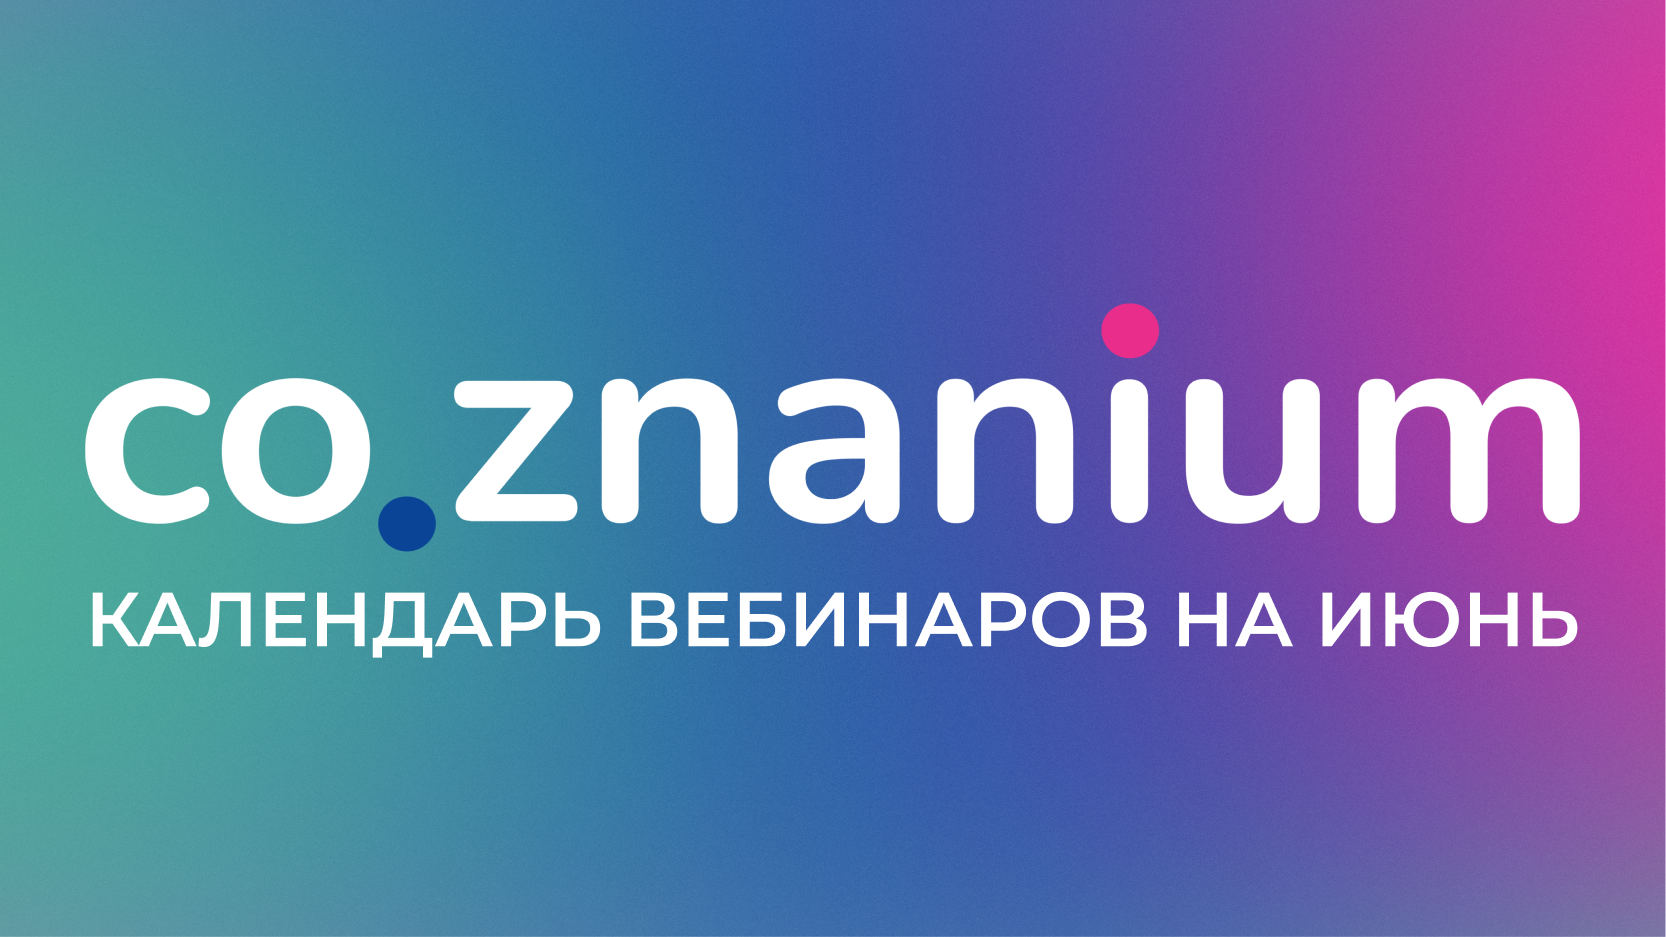 На июнь мы запланировали 4 вебинара.
 Календарь вебинаров на июнь | Новости | Znanium.ru